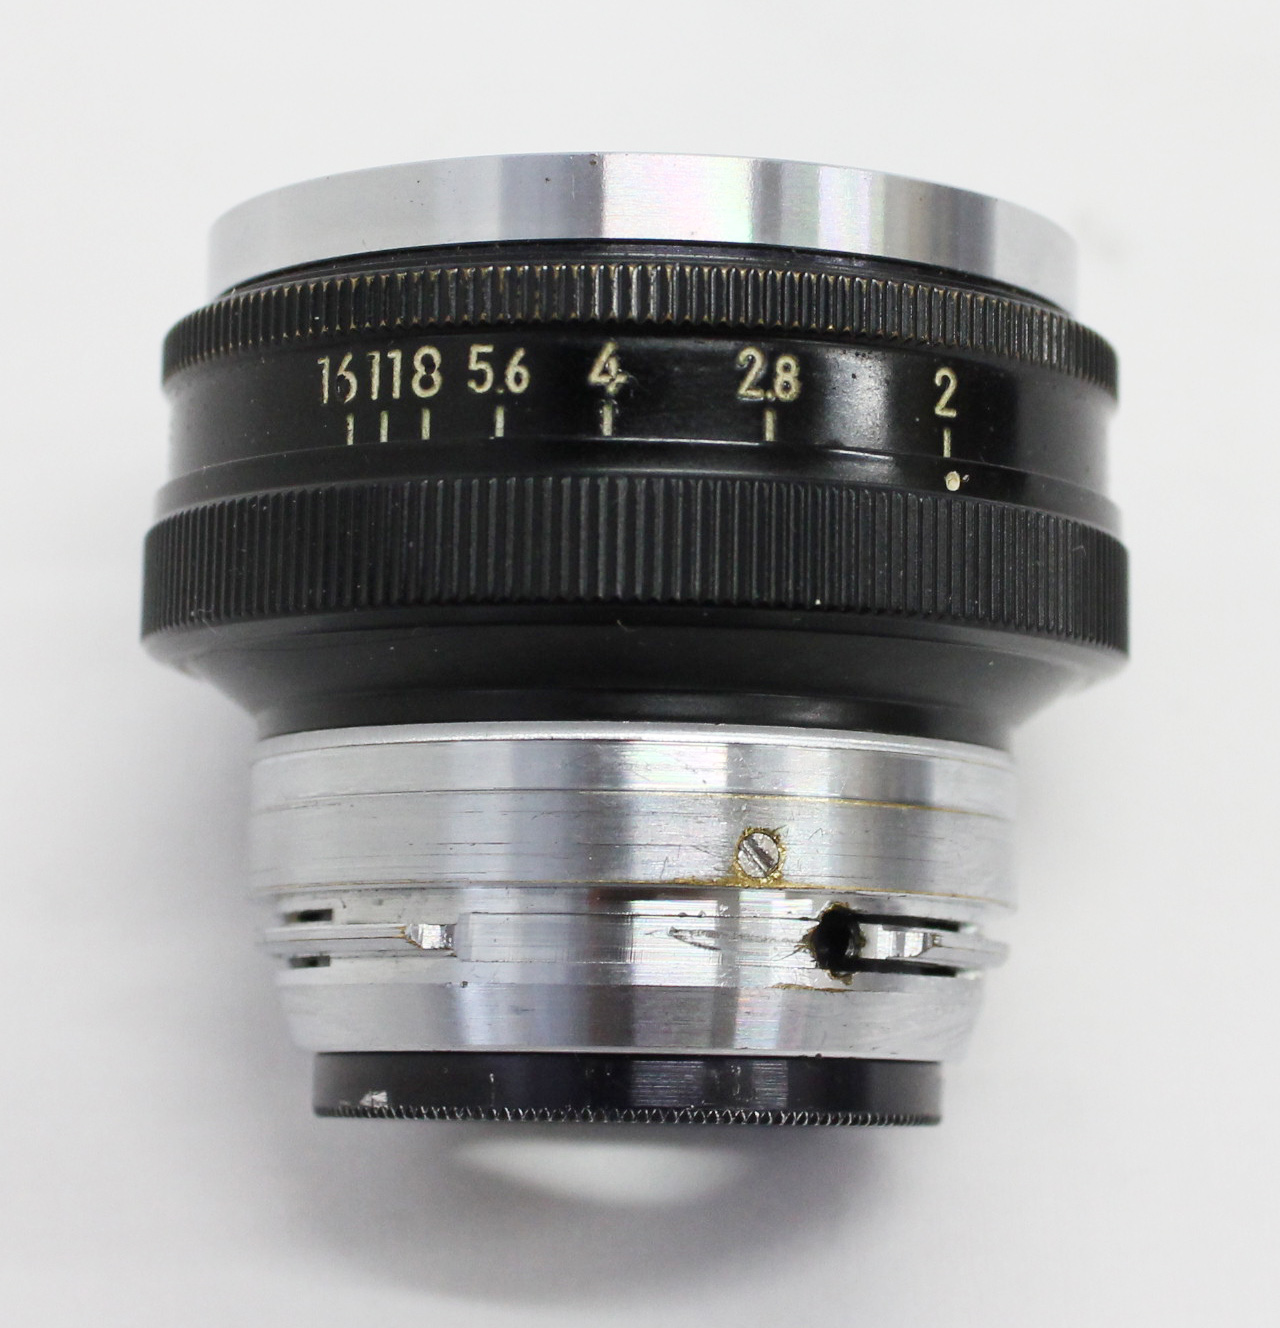 Nikon S3 35mm Rangefinder Camera w/ Nikkor-H 5cm 50mm F/2 Lens from Japan Photo 13